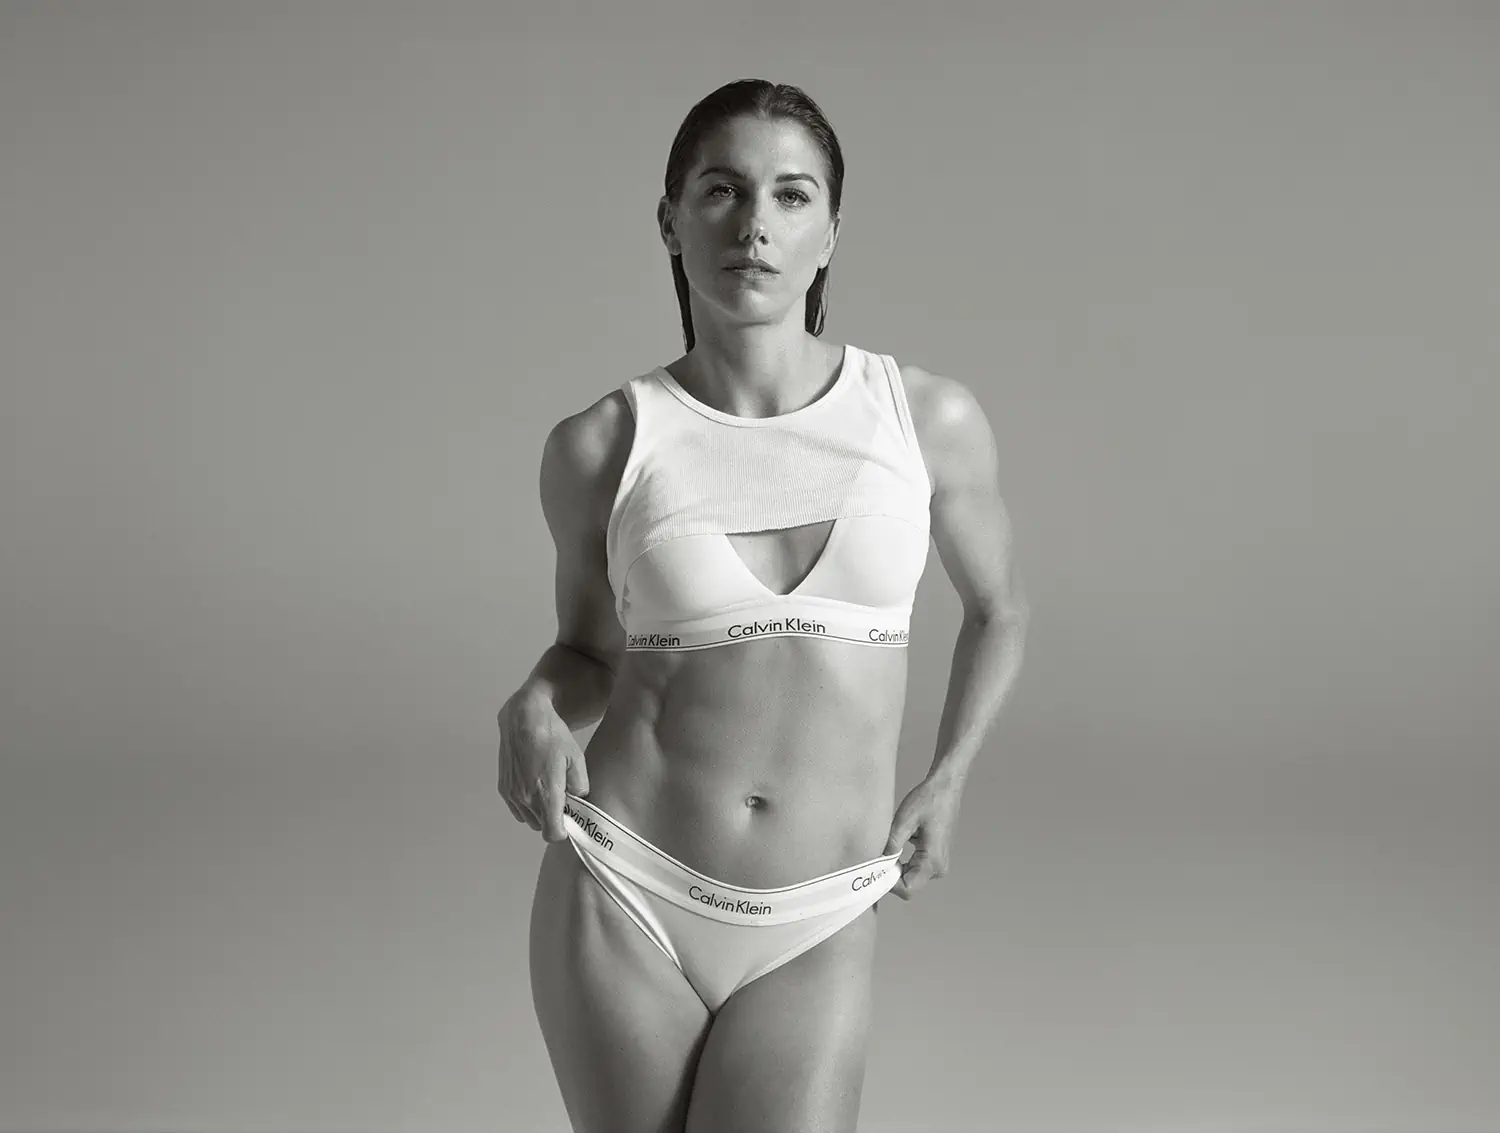 Calvin Klein's ''Calvins or Nothing'': Global sportswomen take the spotlight